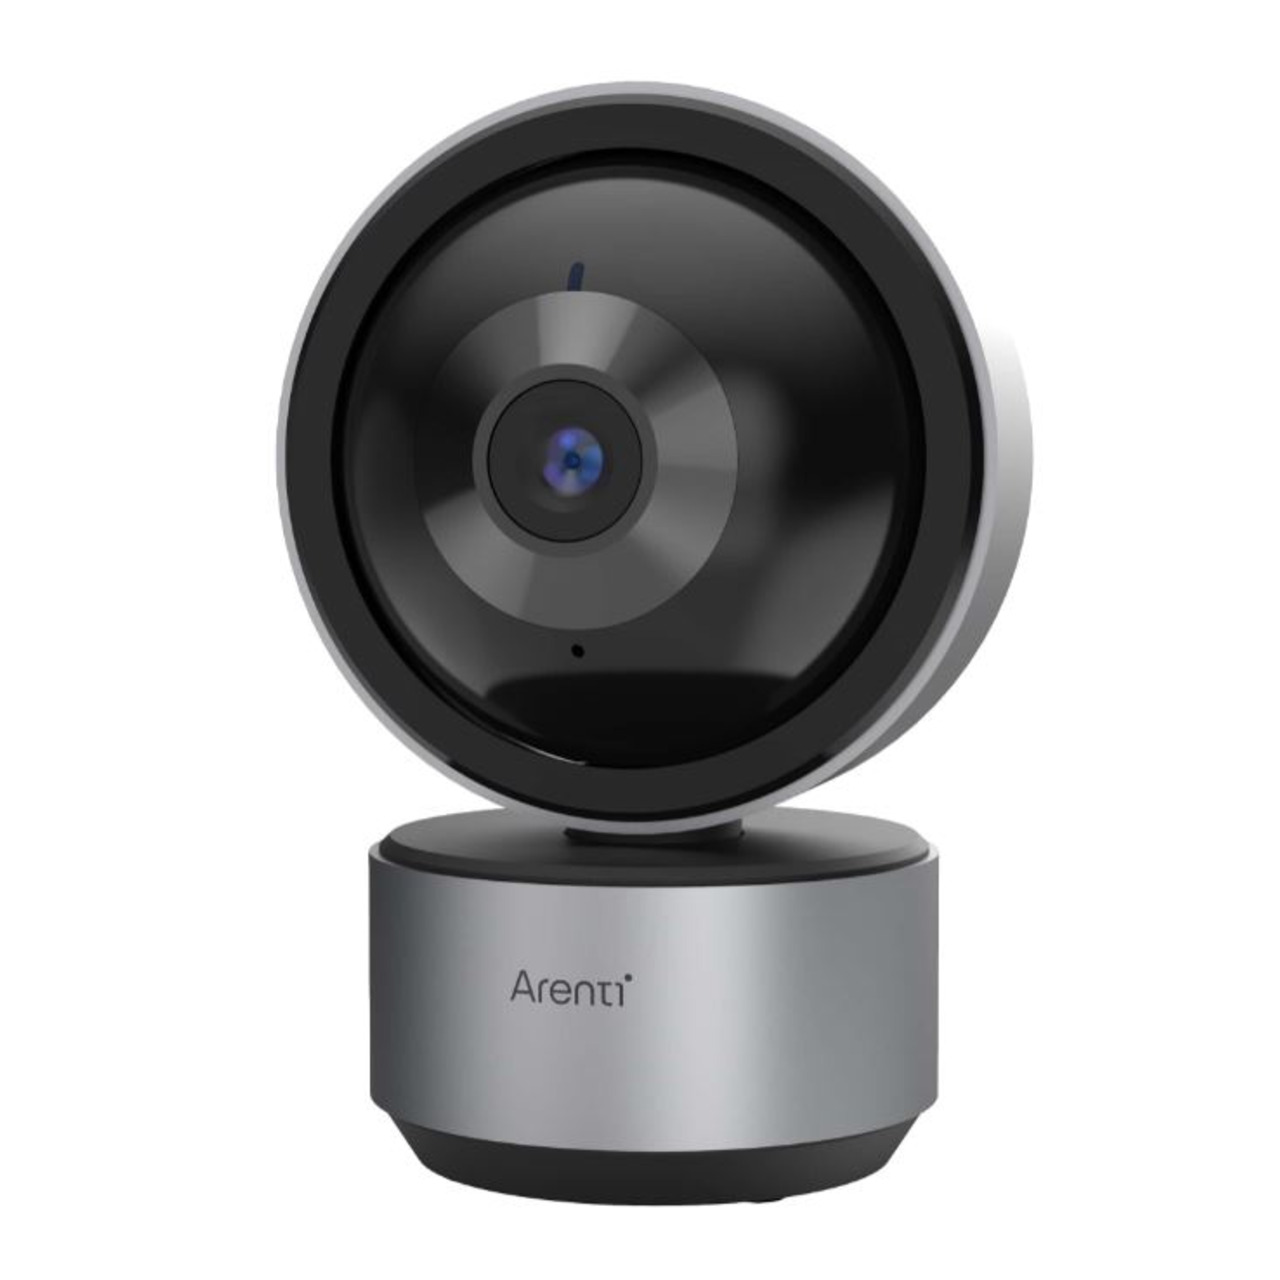 Arenti WLAN-Indoor-Überwachungskamera DOME1- 2K-Auflösung- App- Amazon Alexa- schwenk-neigbar unter Sicherheitstechnik